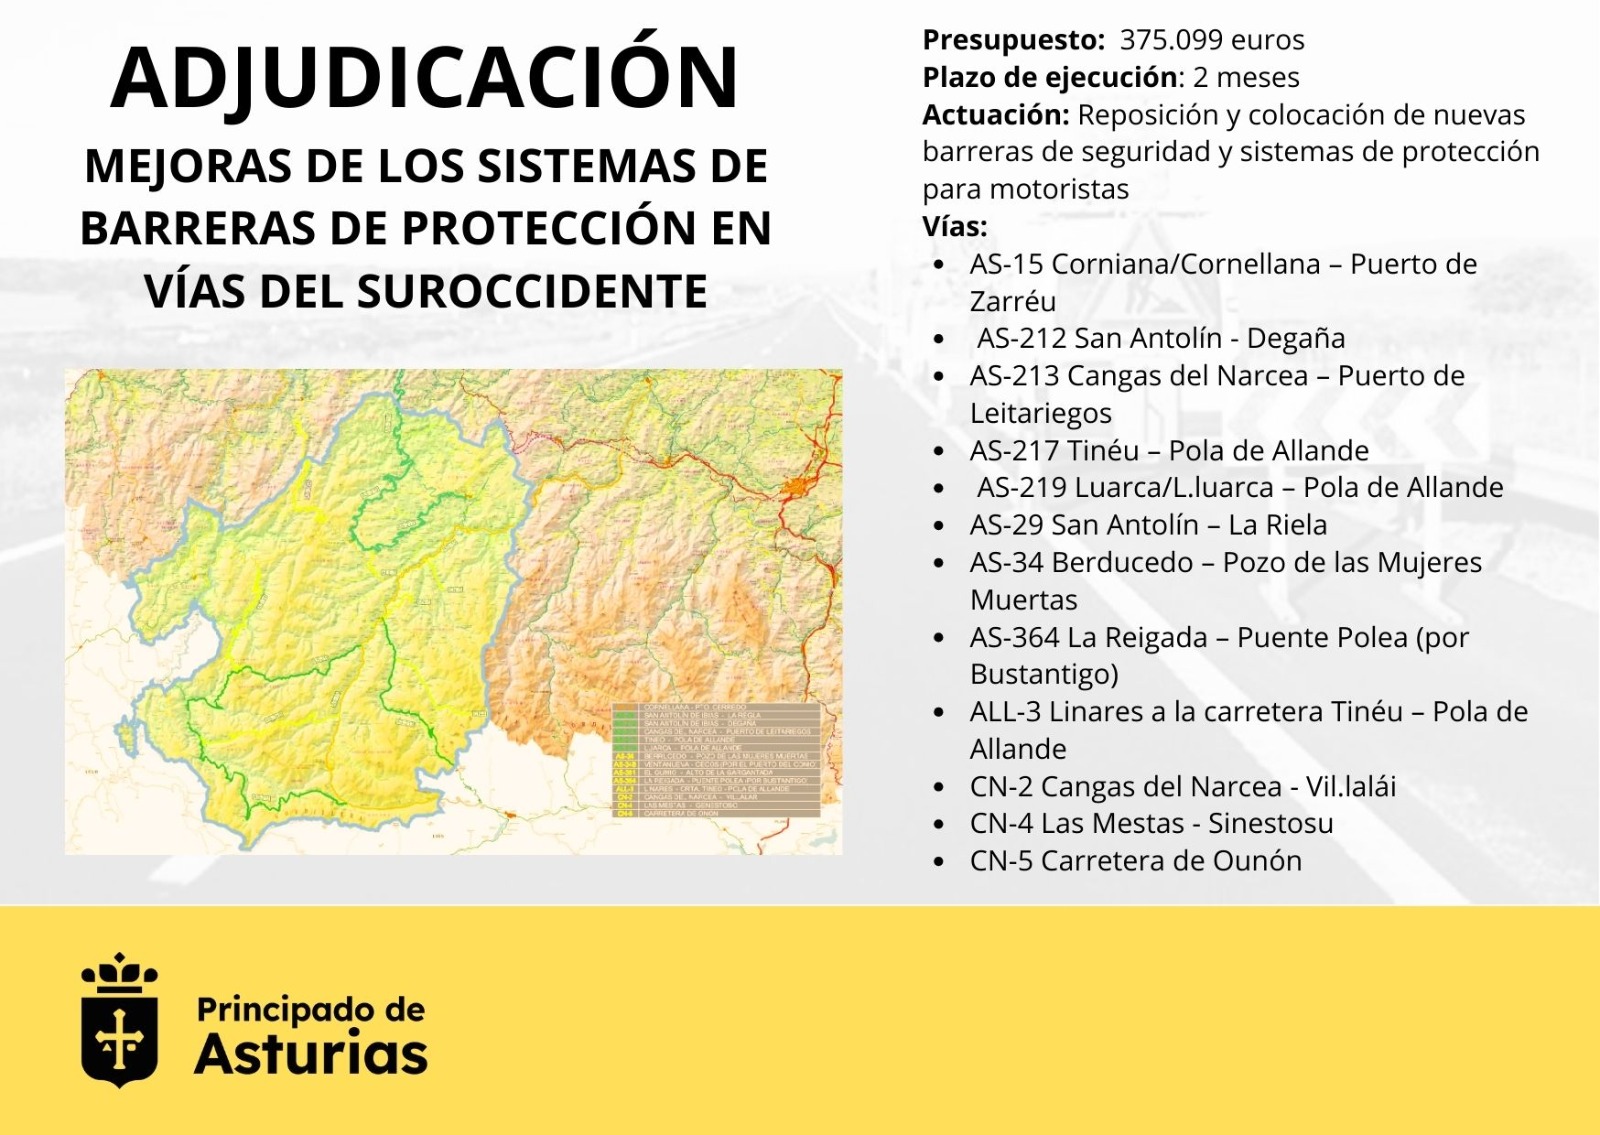 Imagen del artículo El Gobierno de Asturias adjudica las obras para instalar y reponer barreras de seguridad en una docena de carreteras del suroccidente por 375.000 euros